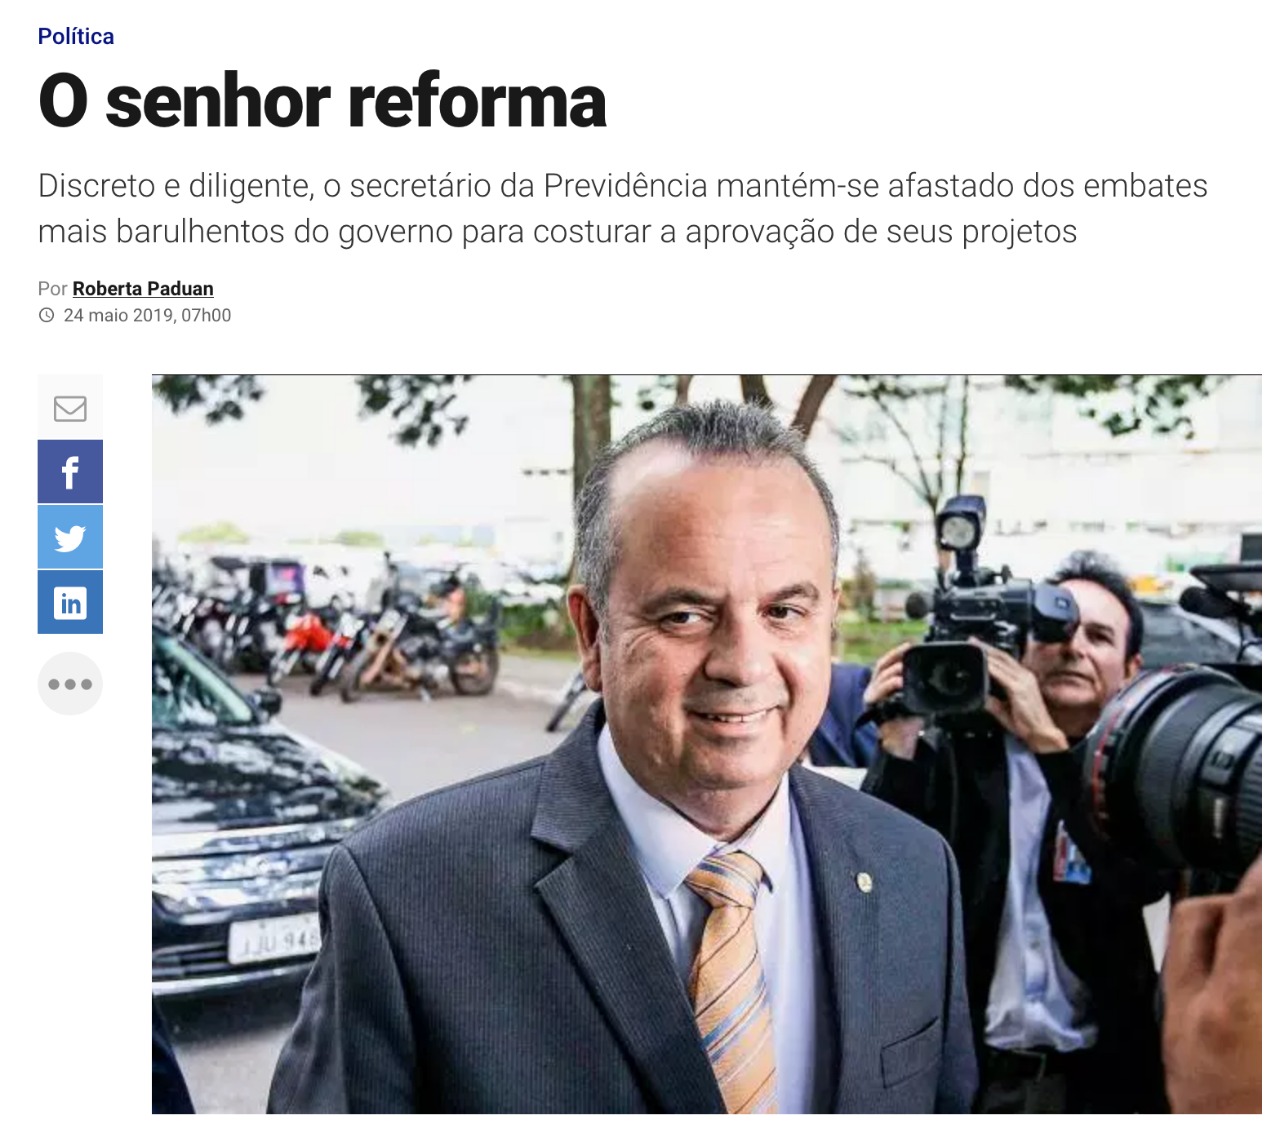 Revista Veja aponta Rogério Marinho como "Senhor Reforma"